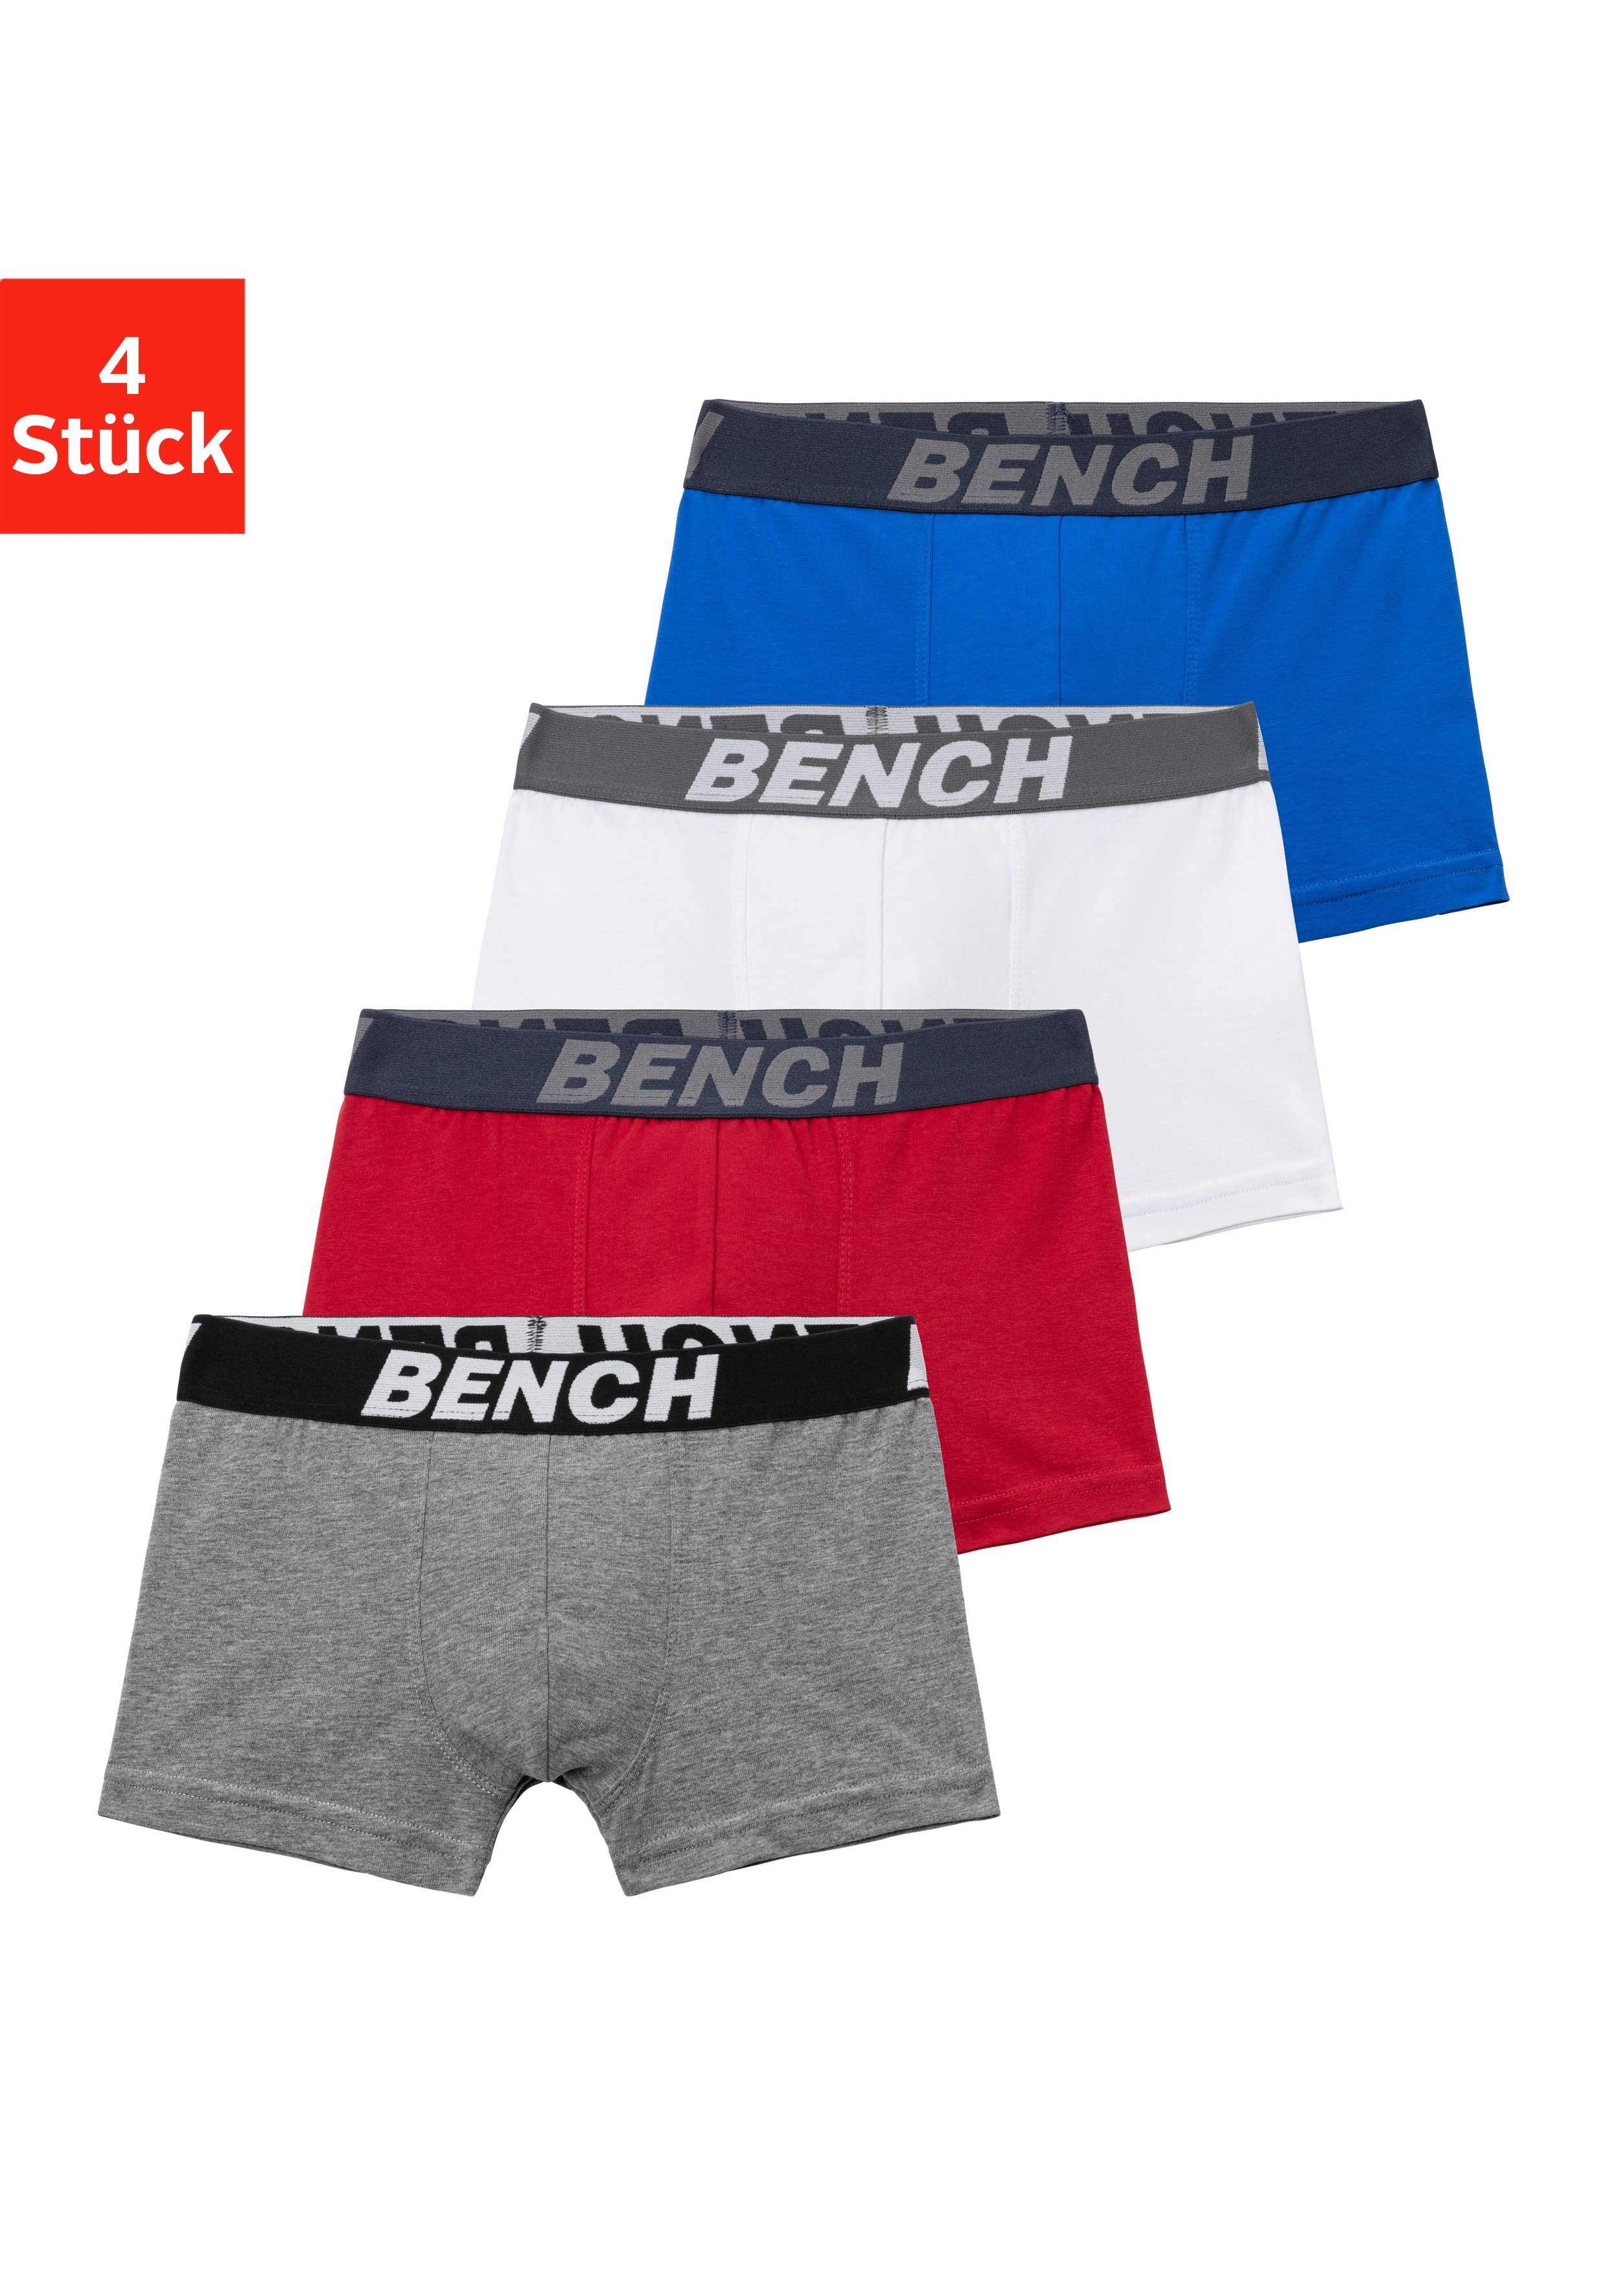 Bench. Boxer (Packung, 4-St) rot, für Bench blau, mit Bund Schriftzug im grau-meliert weiß, Jungen